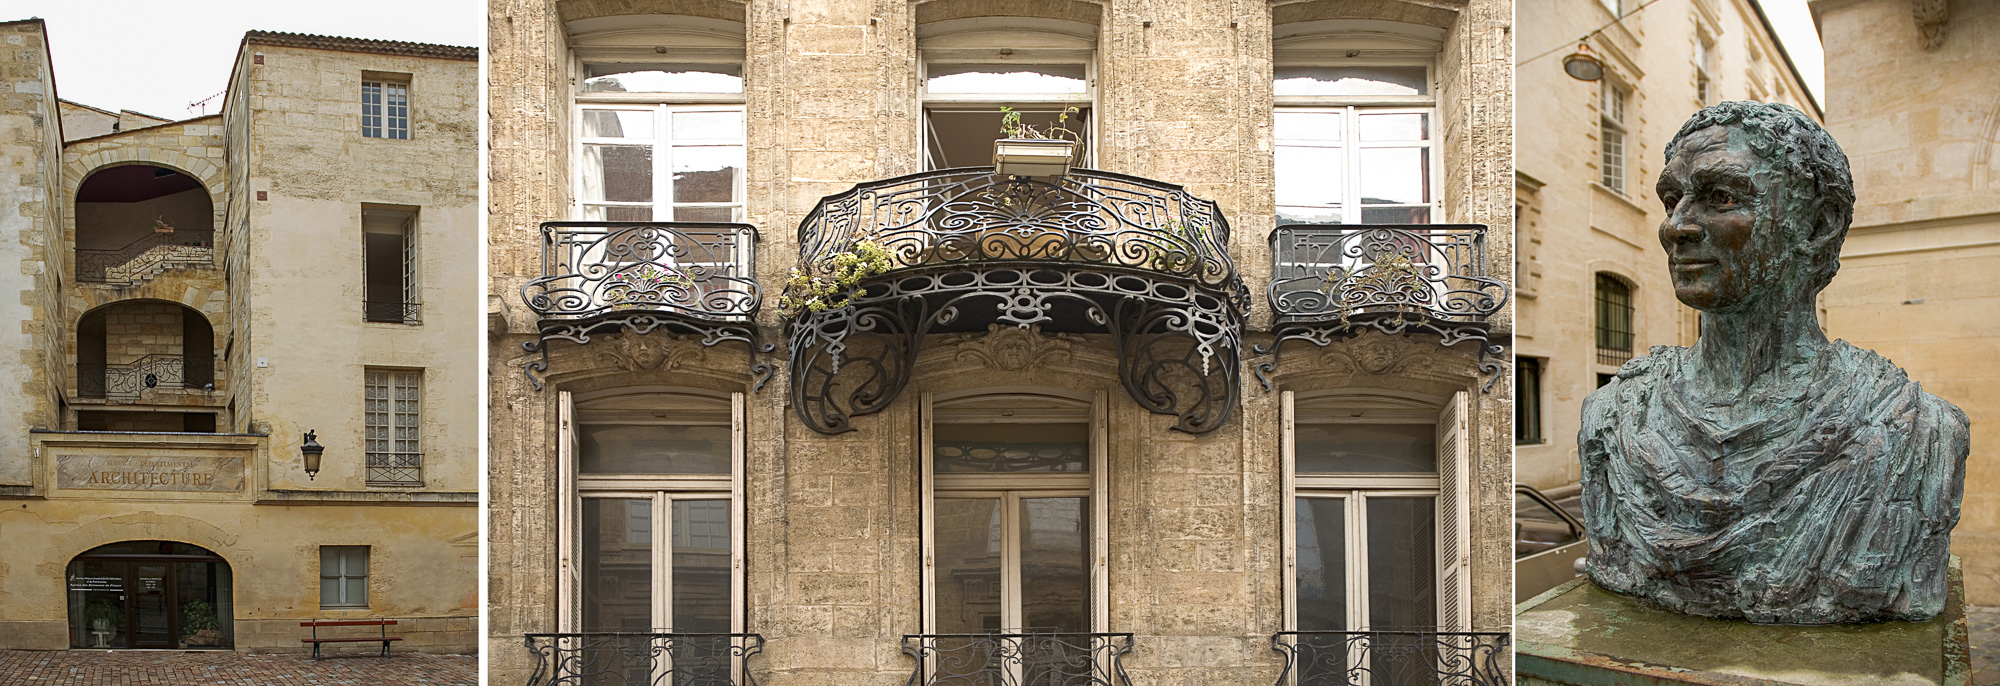 Place Raymond Colom - balcon en fer forge rue Ausone et buste du poète